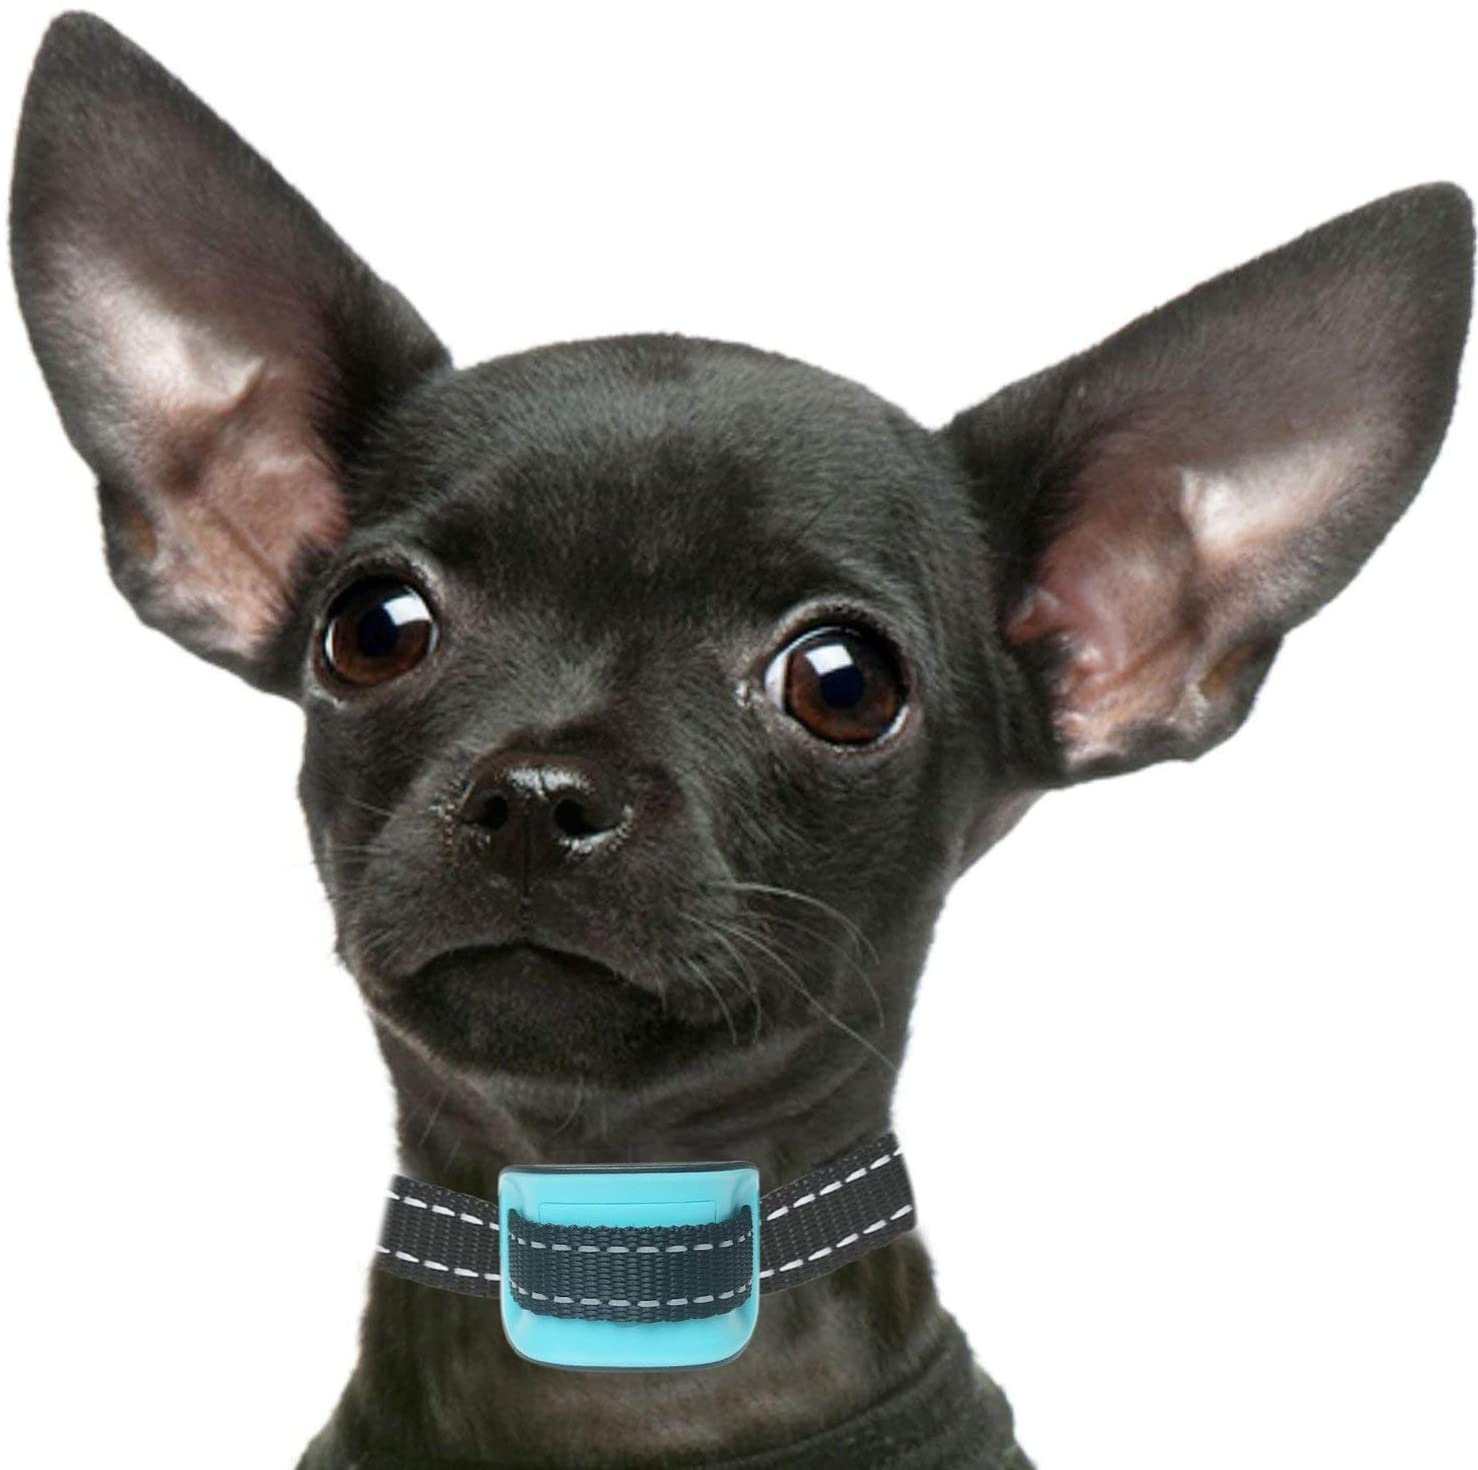  Petsol - Collar antiladridos para Perros pequeños, Color Azul, Entrenar a Perros pequeños y Cachorros, sin Golpes, con 6 Meses de garantía y baterías adicionales Incluidas 